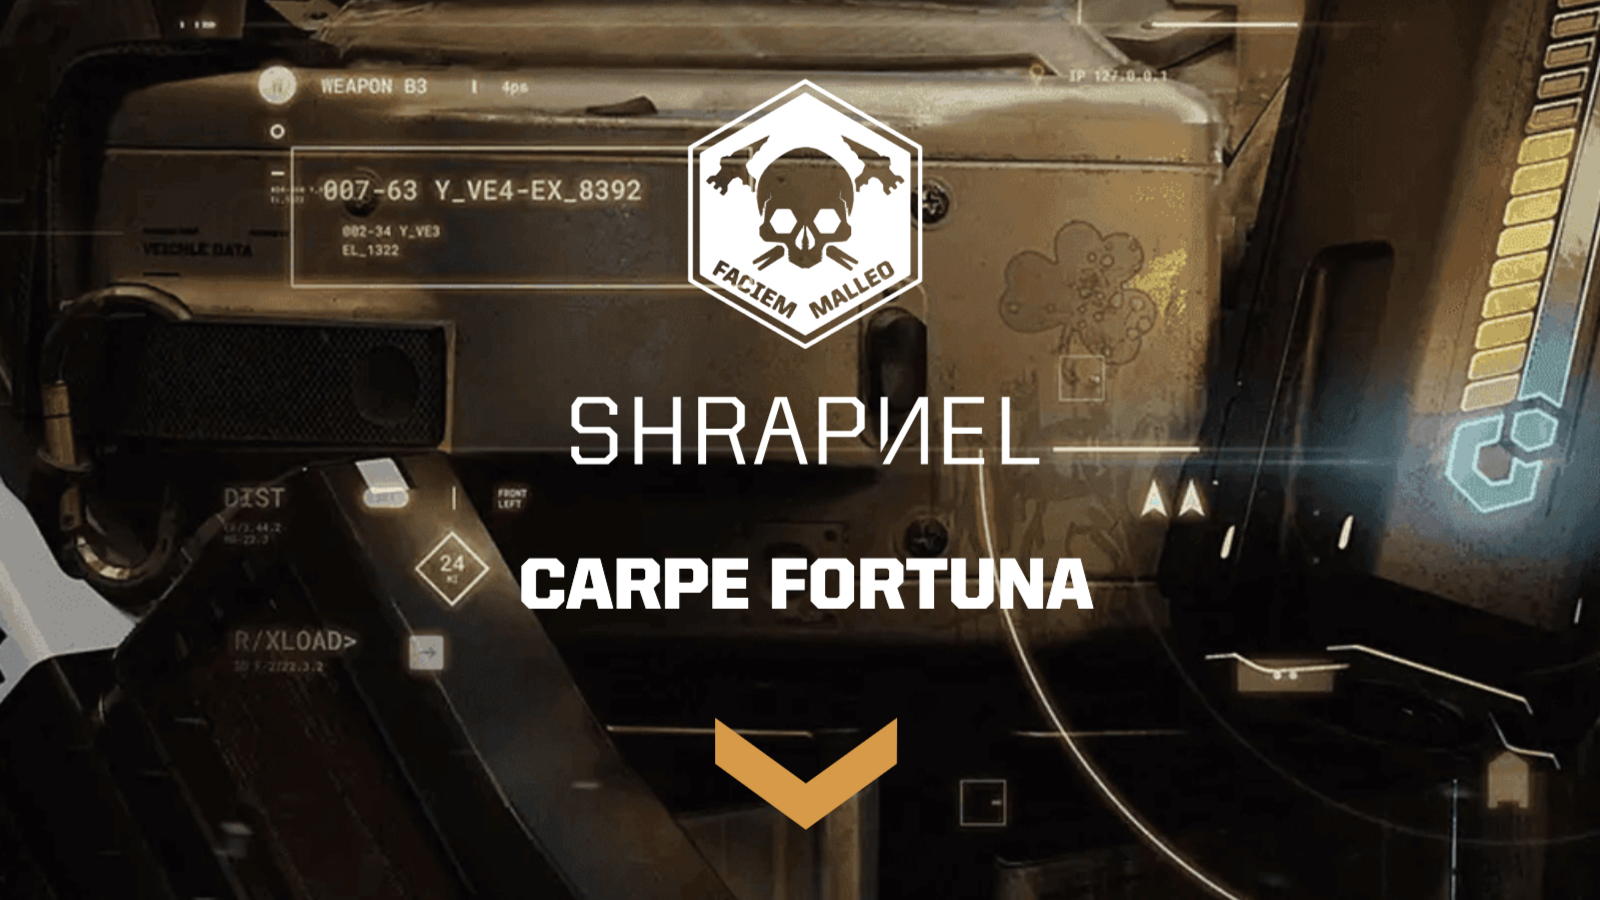 Shrapnel carpe fortuna